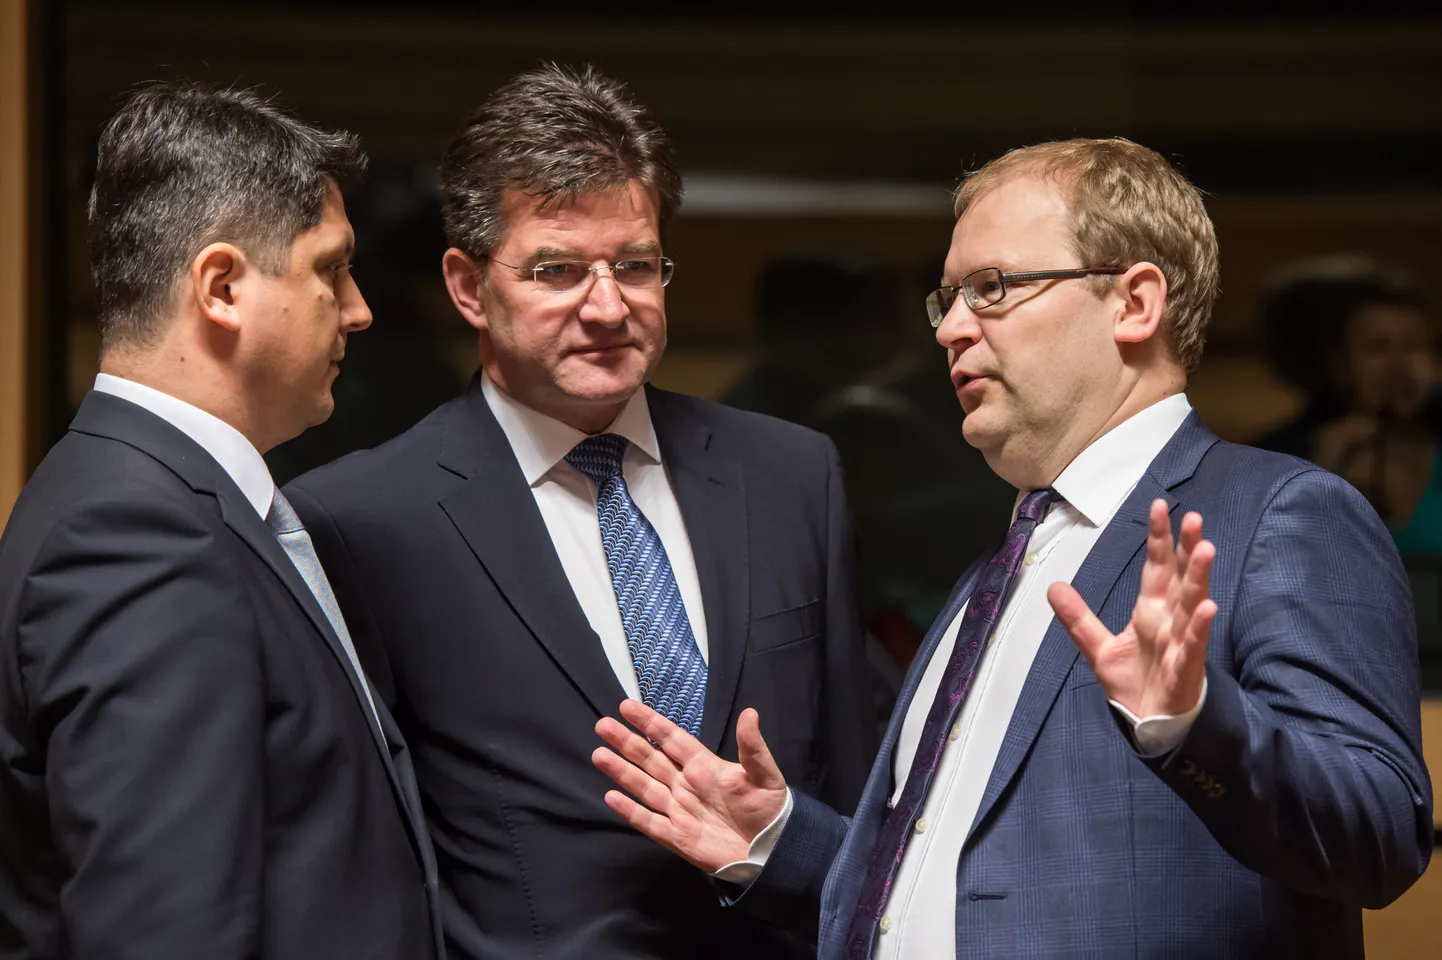 Eesti väliminister Urmas Paet (paremal)täna Luksemburgis koos Rumeenia ametivenna Titus Corlatean (vasakul)ja Slovakkia välisministri  Miroslav Lajcakiga.